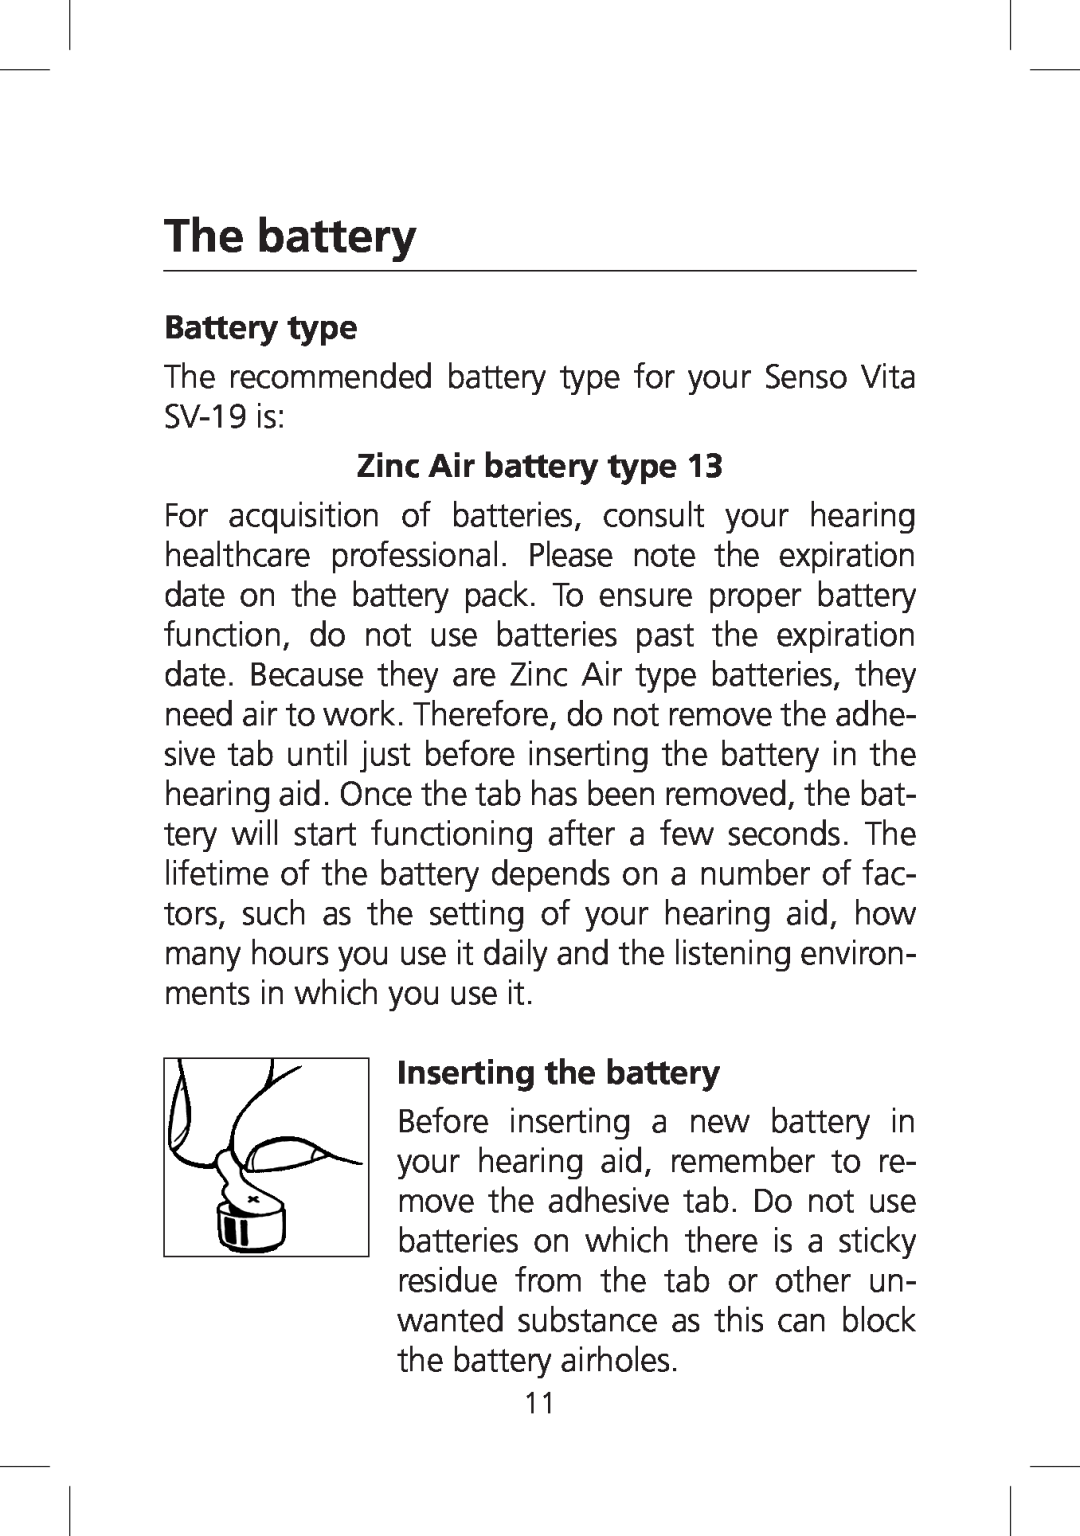 SV Sound SV-19 manual The battery, Battery type, Zinc Air battery type, Inserting the battery 